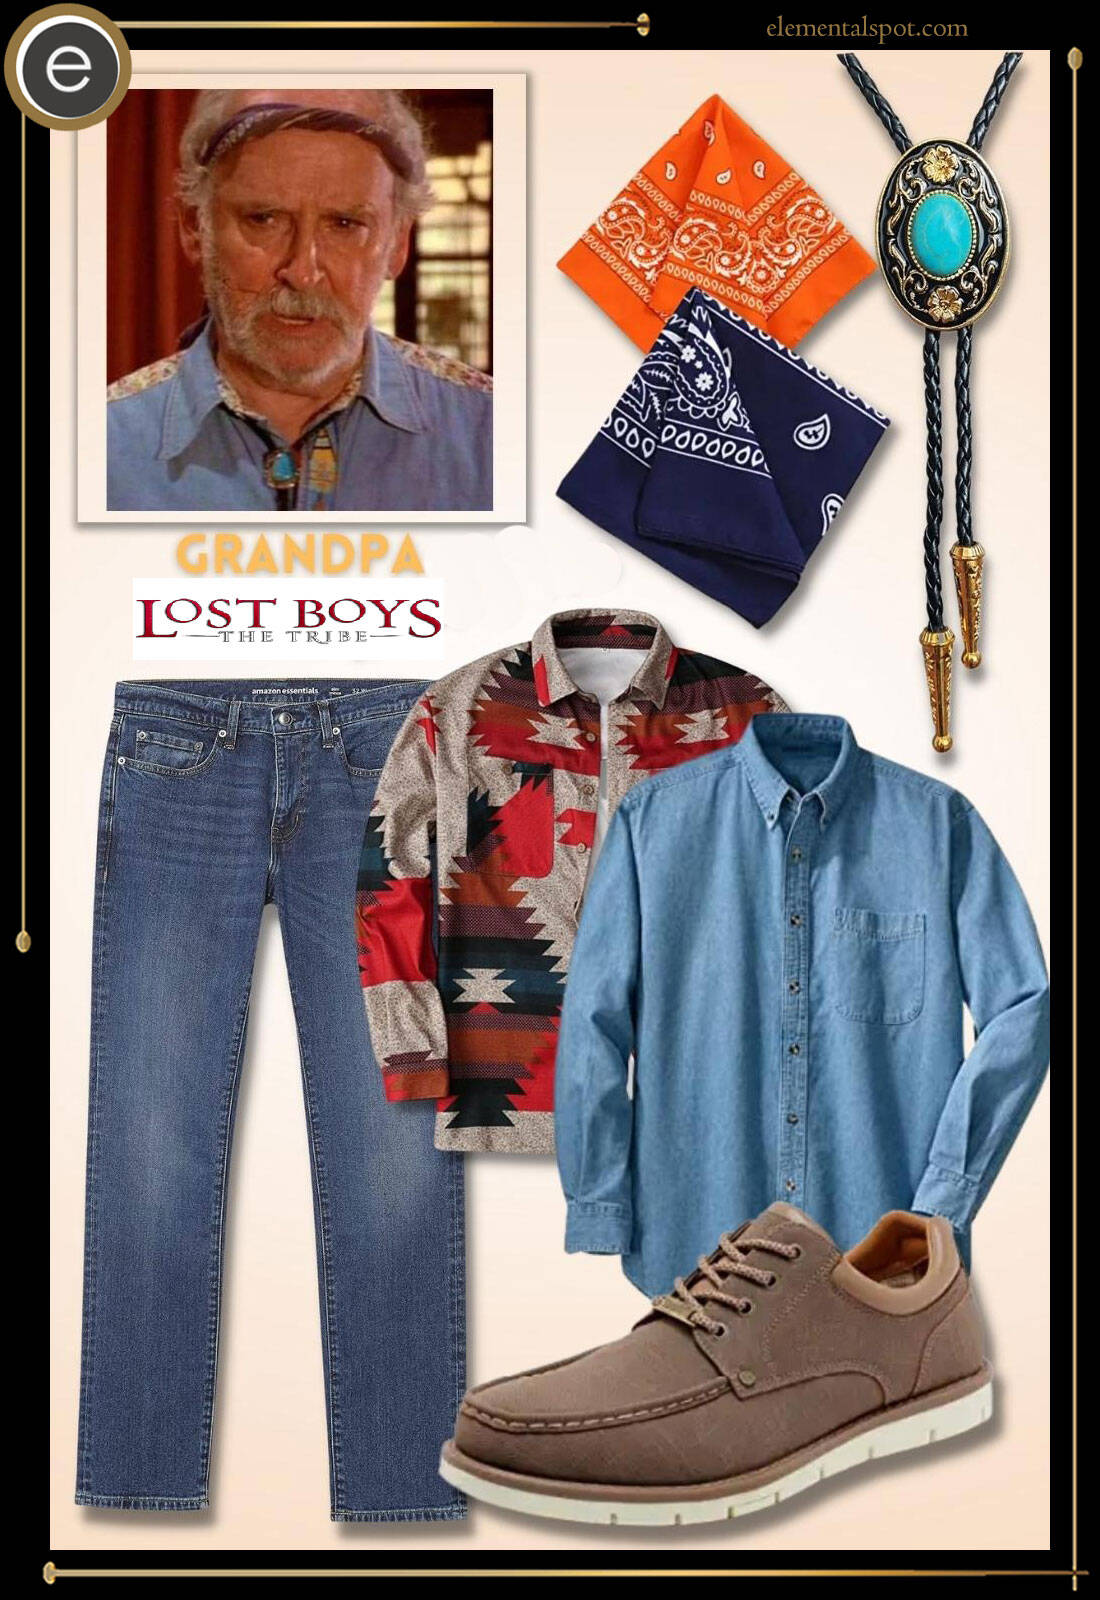 Costume-Grandpa-The Lost Boys